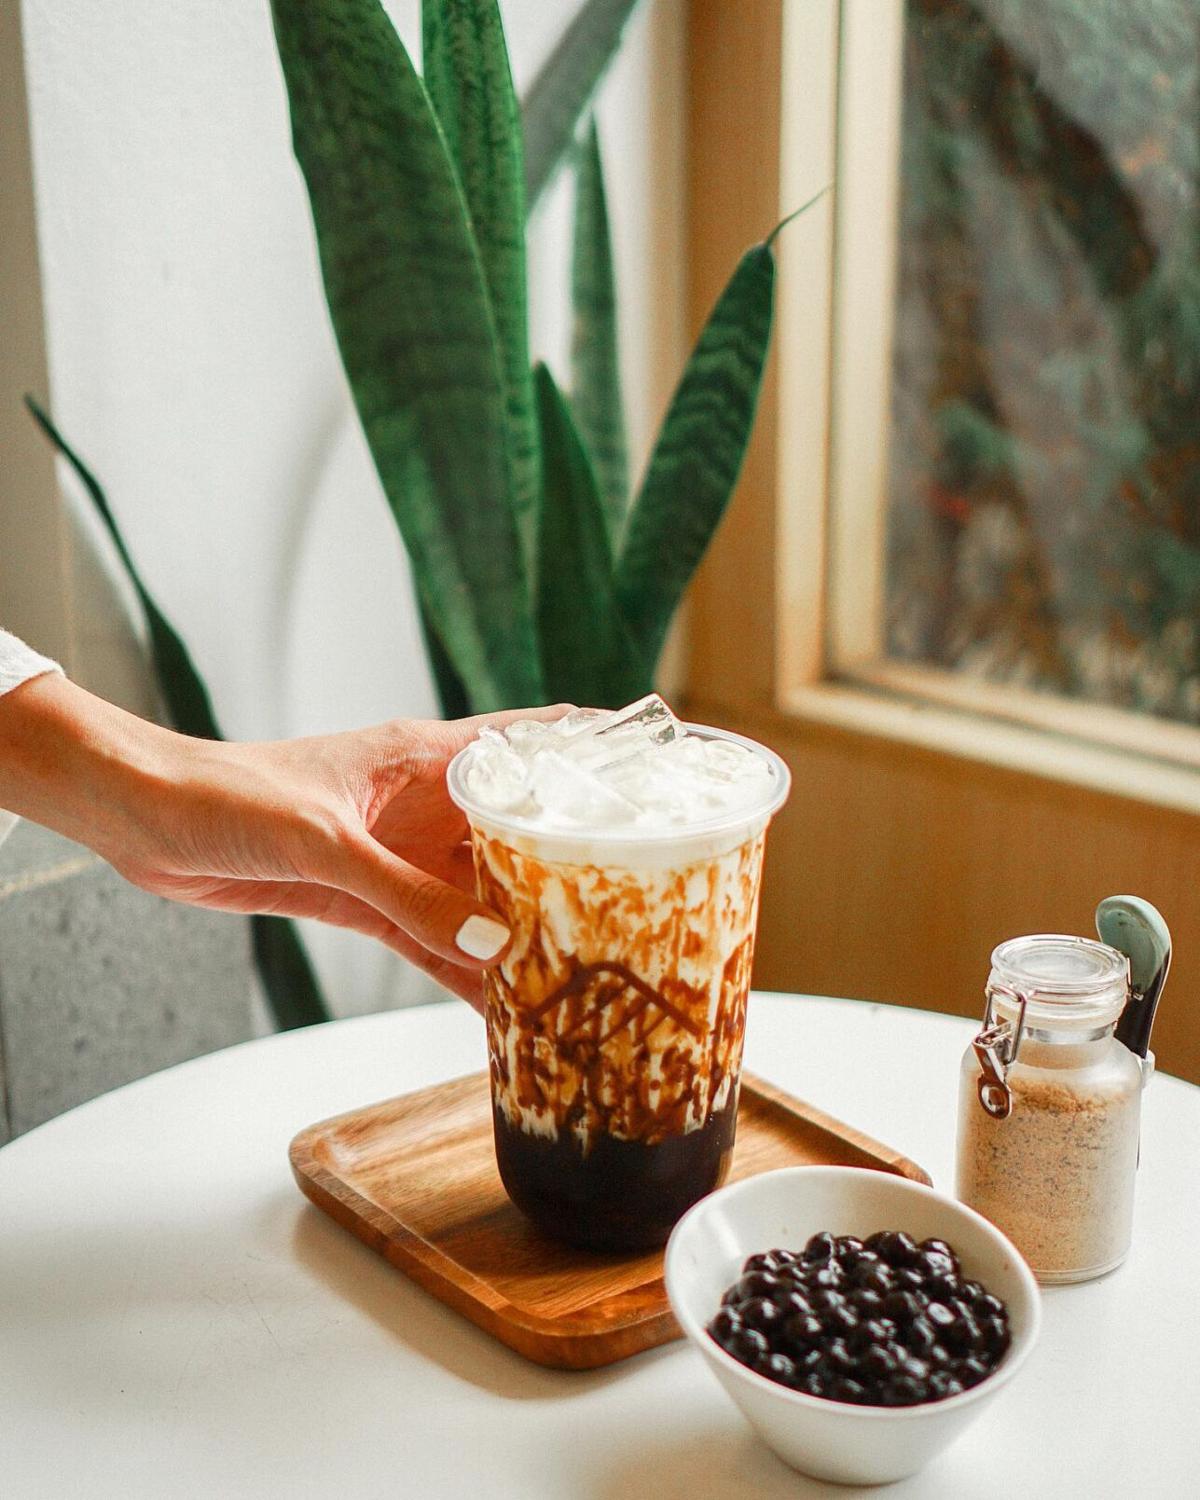 Brown sugar pearl with milk – Bruu Cafe